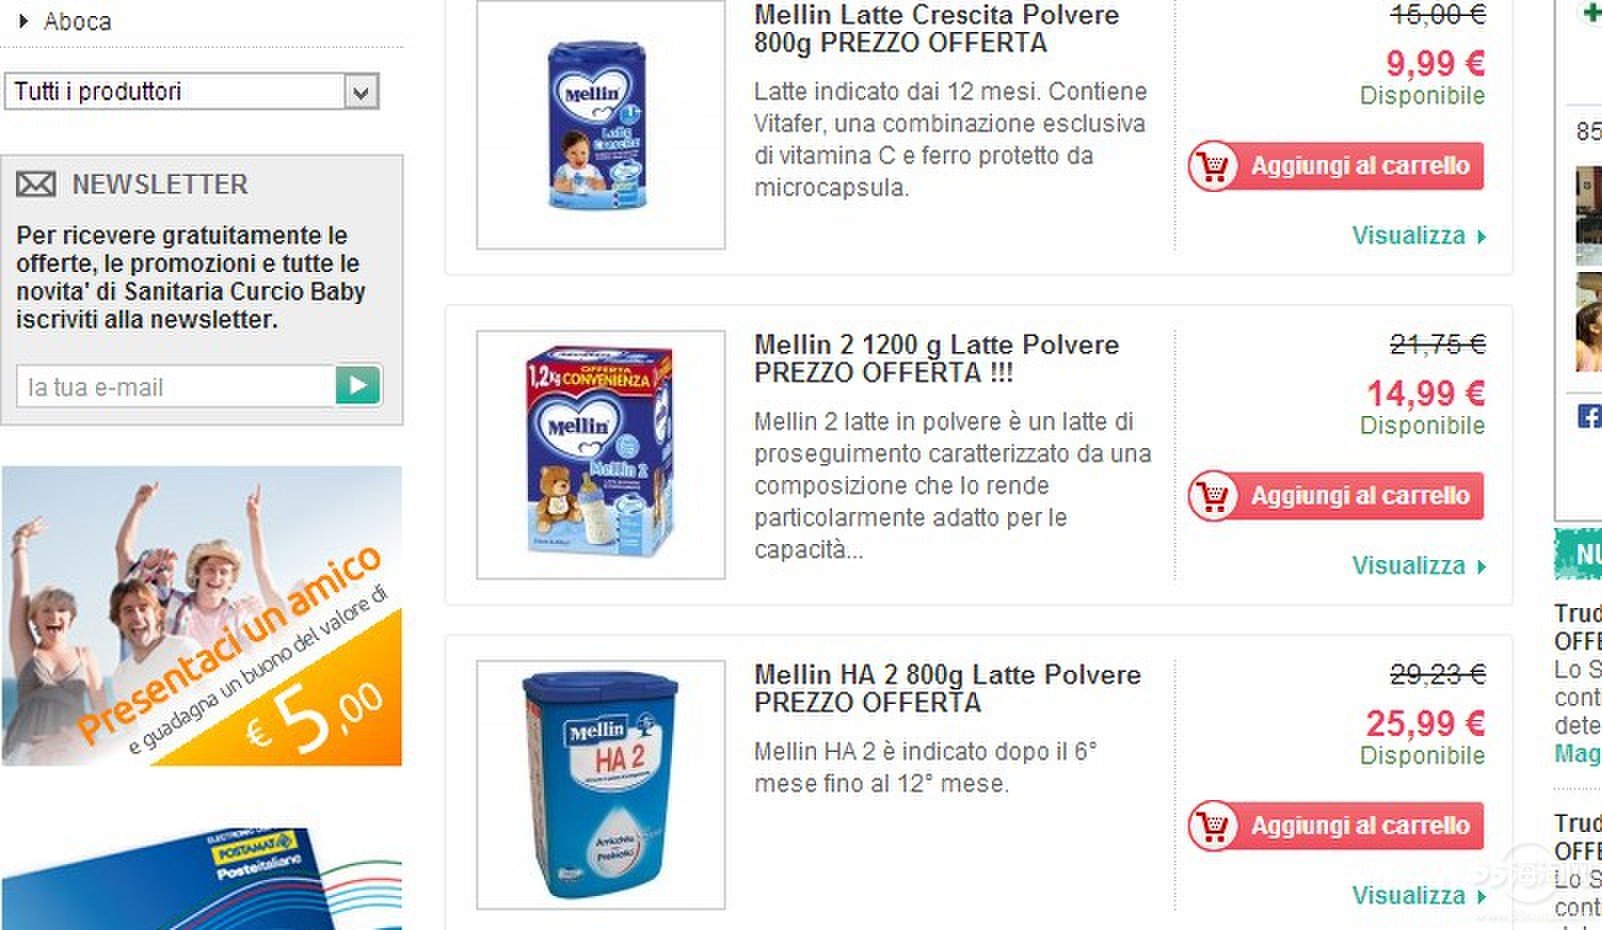 意大利母婴产品最便宜的海淘网站 - 淘宝卖家|代